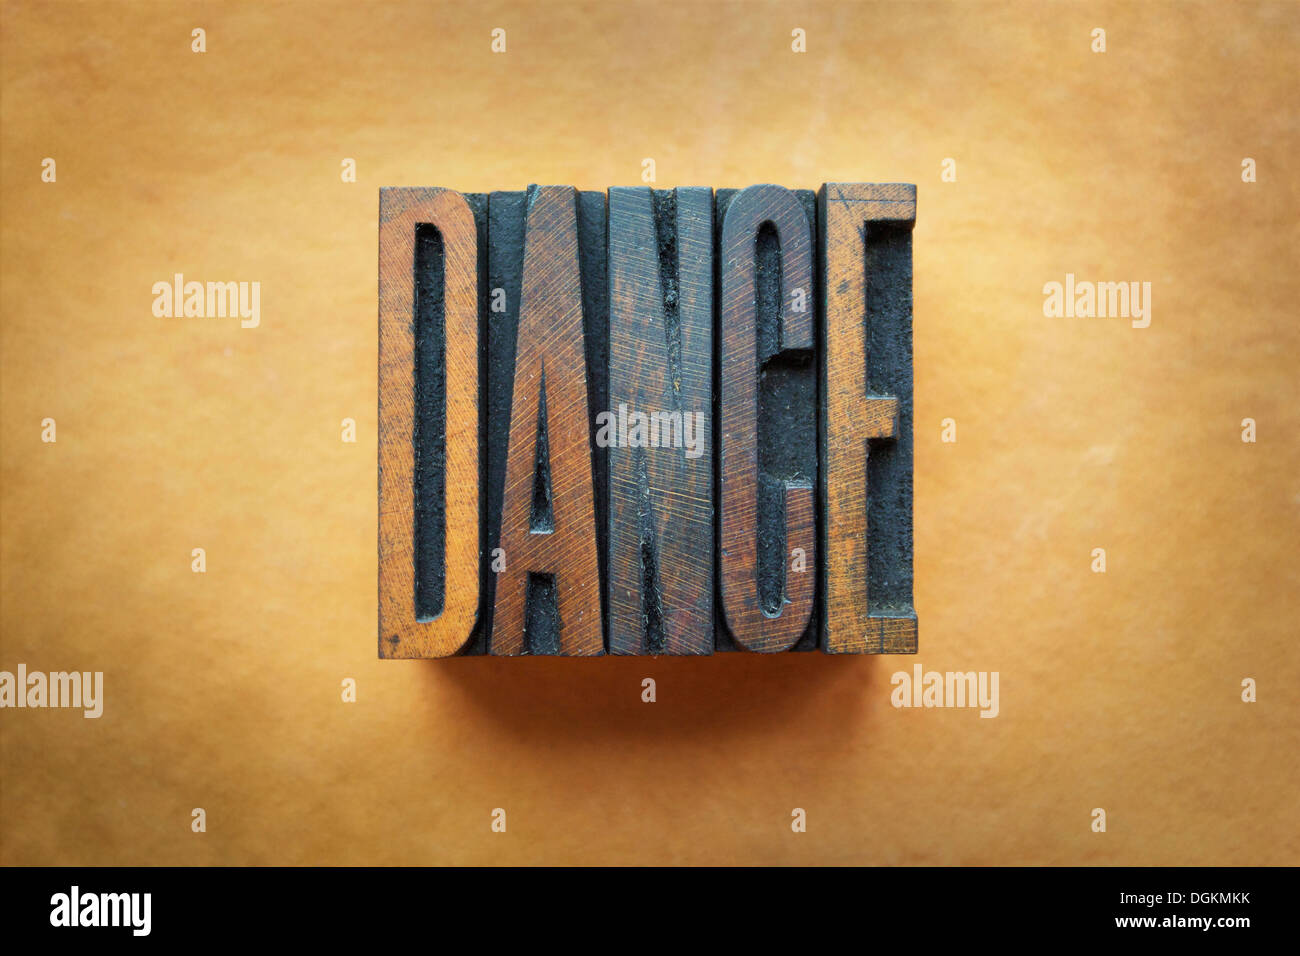 The word DANCE written in vintage letterpress type. Stock Photo